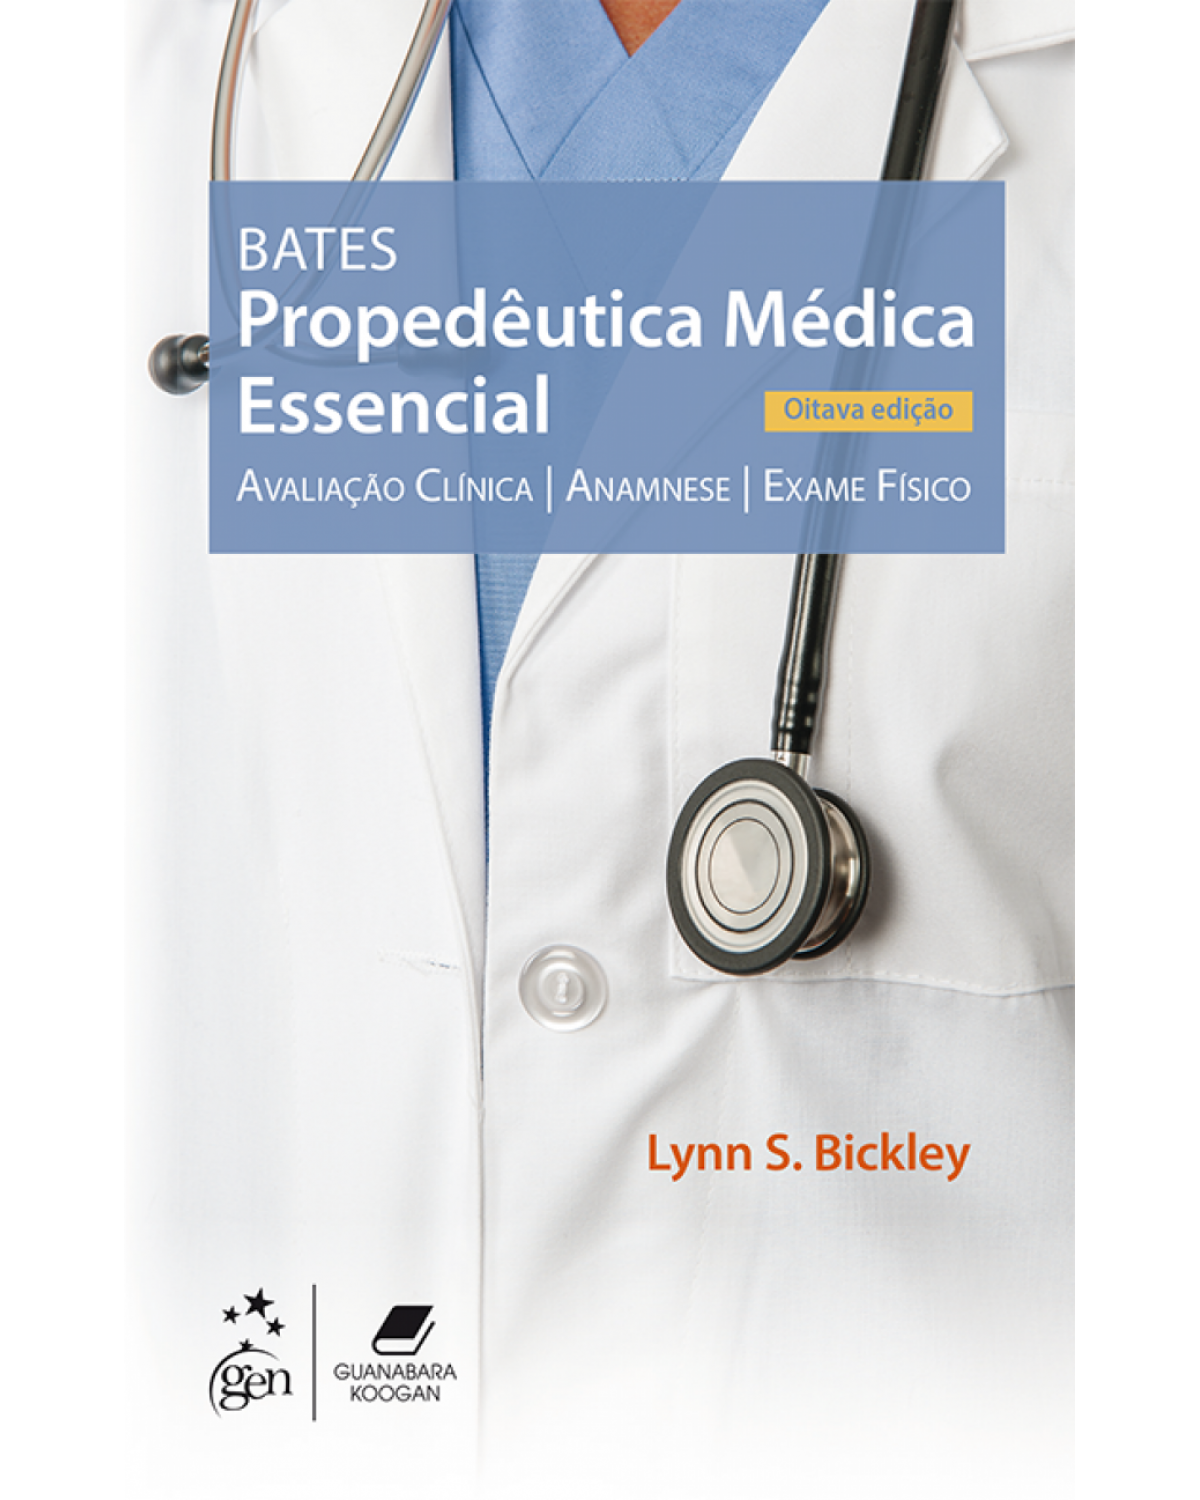 Bates - Propedêutica médica essencial - avaliação clínica, anamnese, exame físico - 8ª Edição | 2018